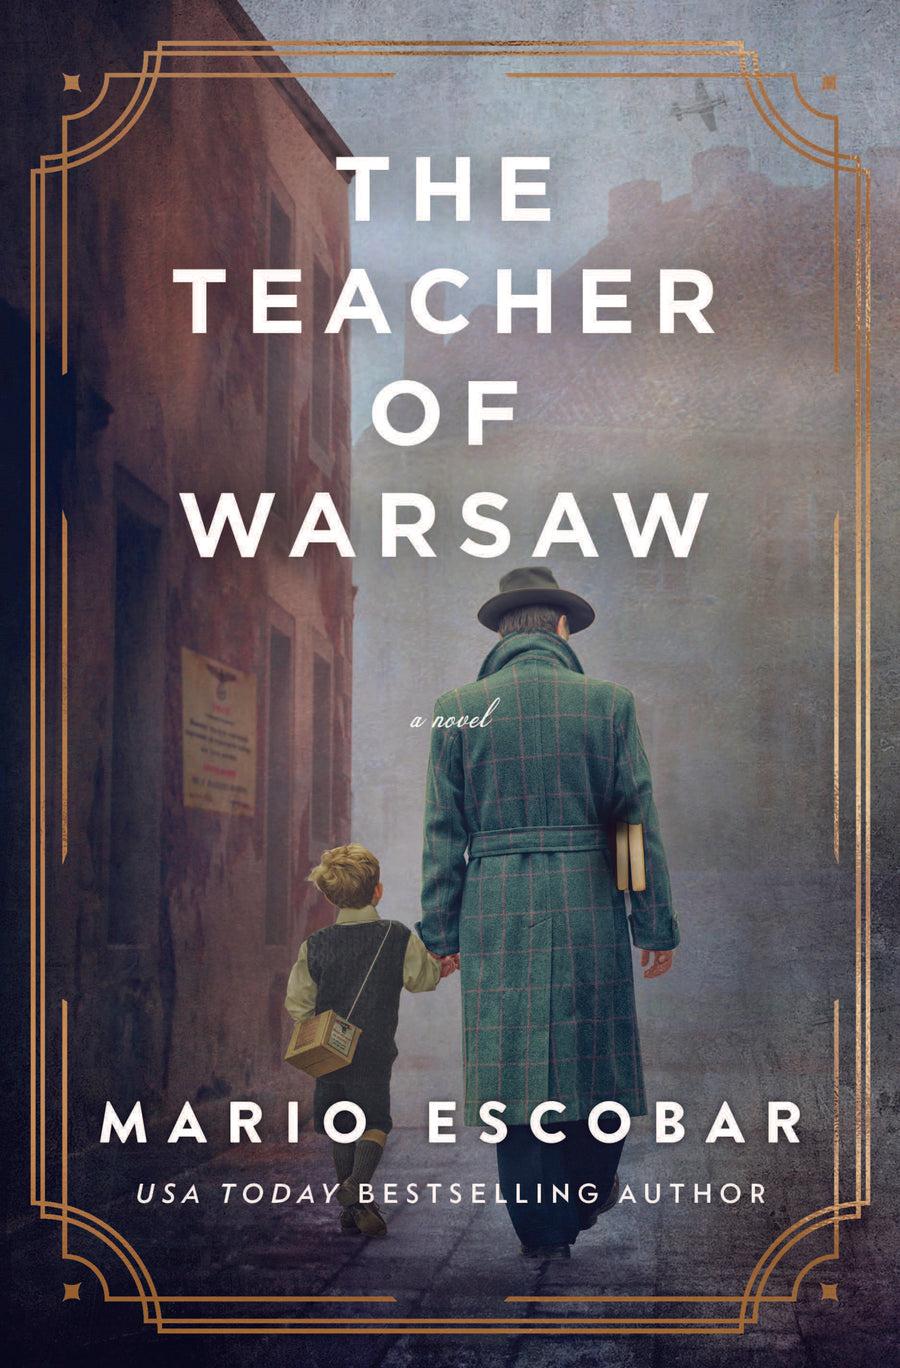 The Teacher of Warsaw by Mario Escobar